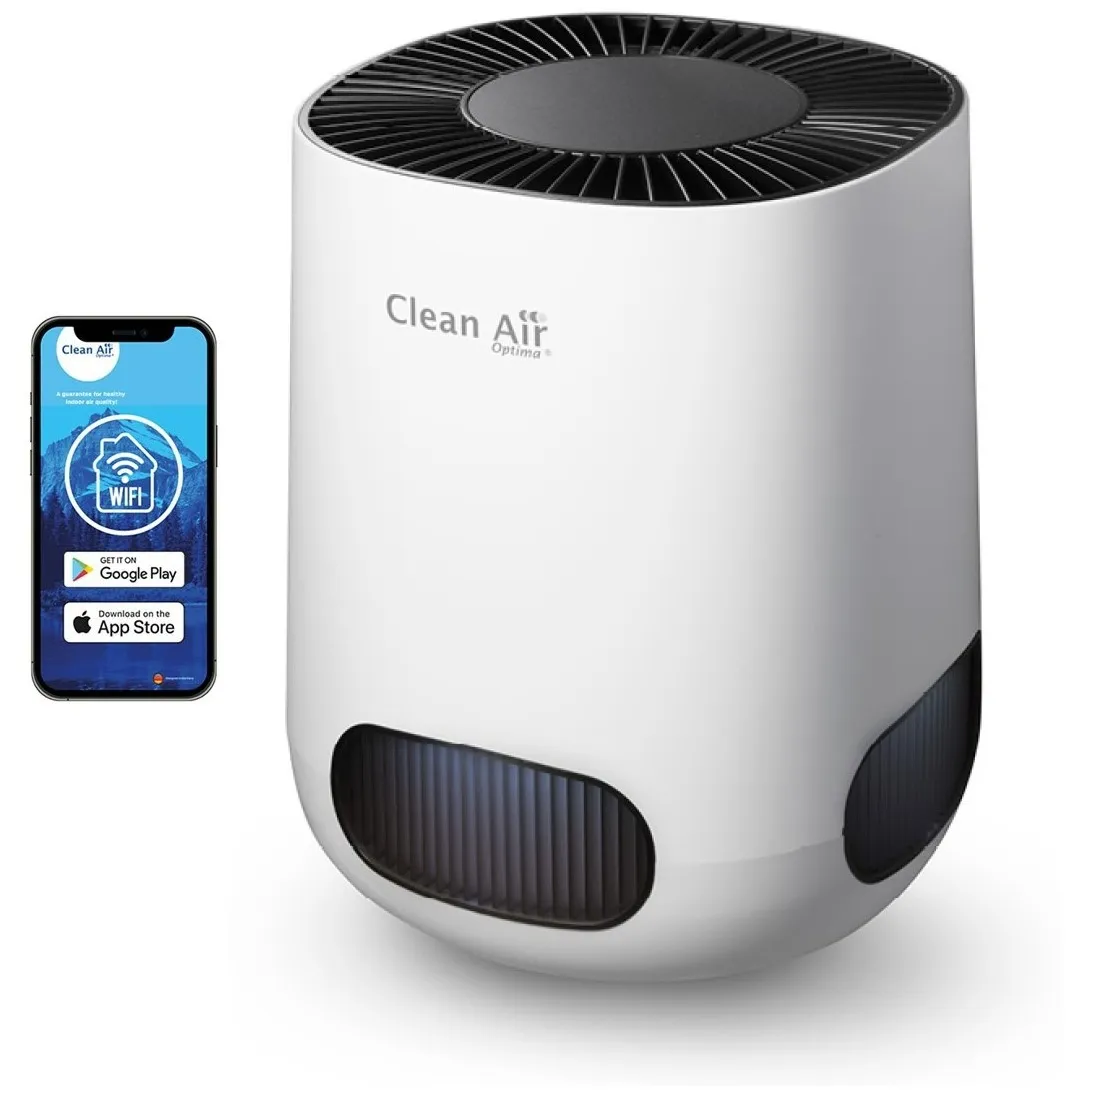 Clean Air Optima CA-502 desktop smart Wit